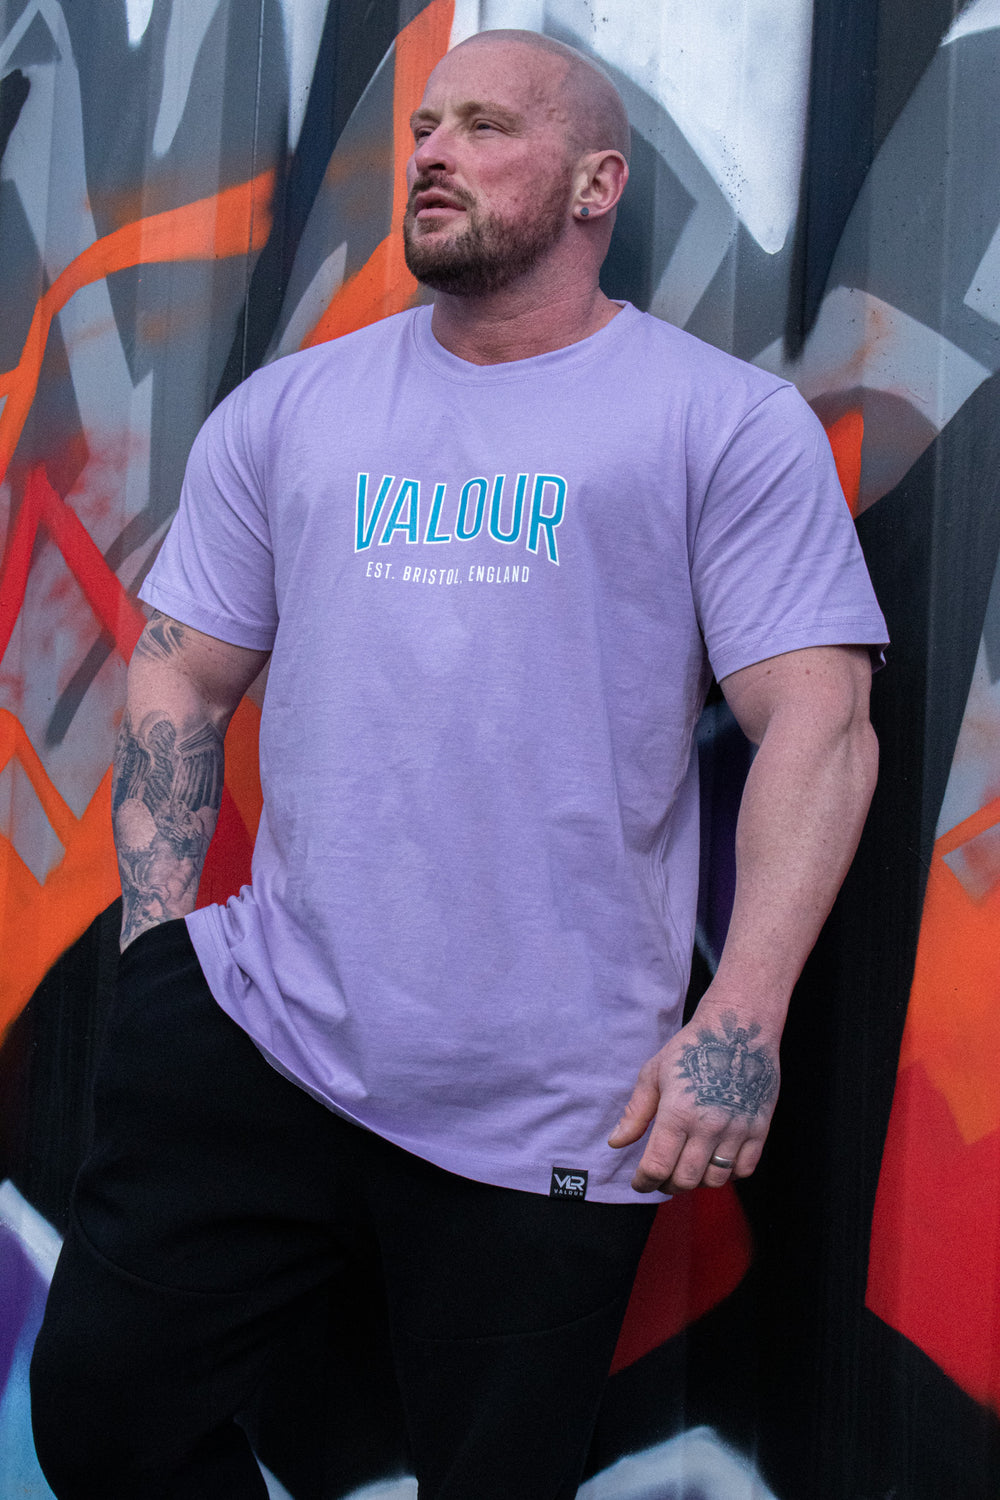 man wearing purple valour gym shirt